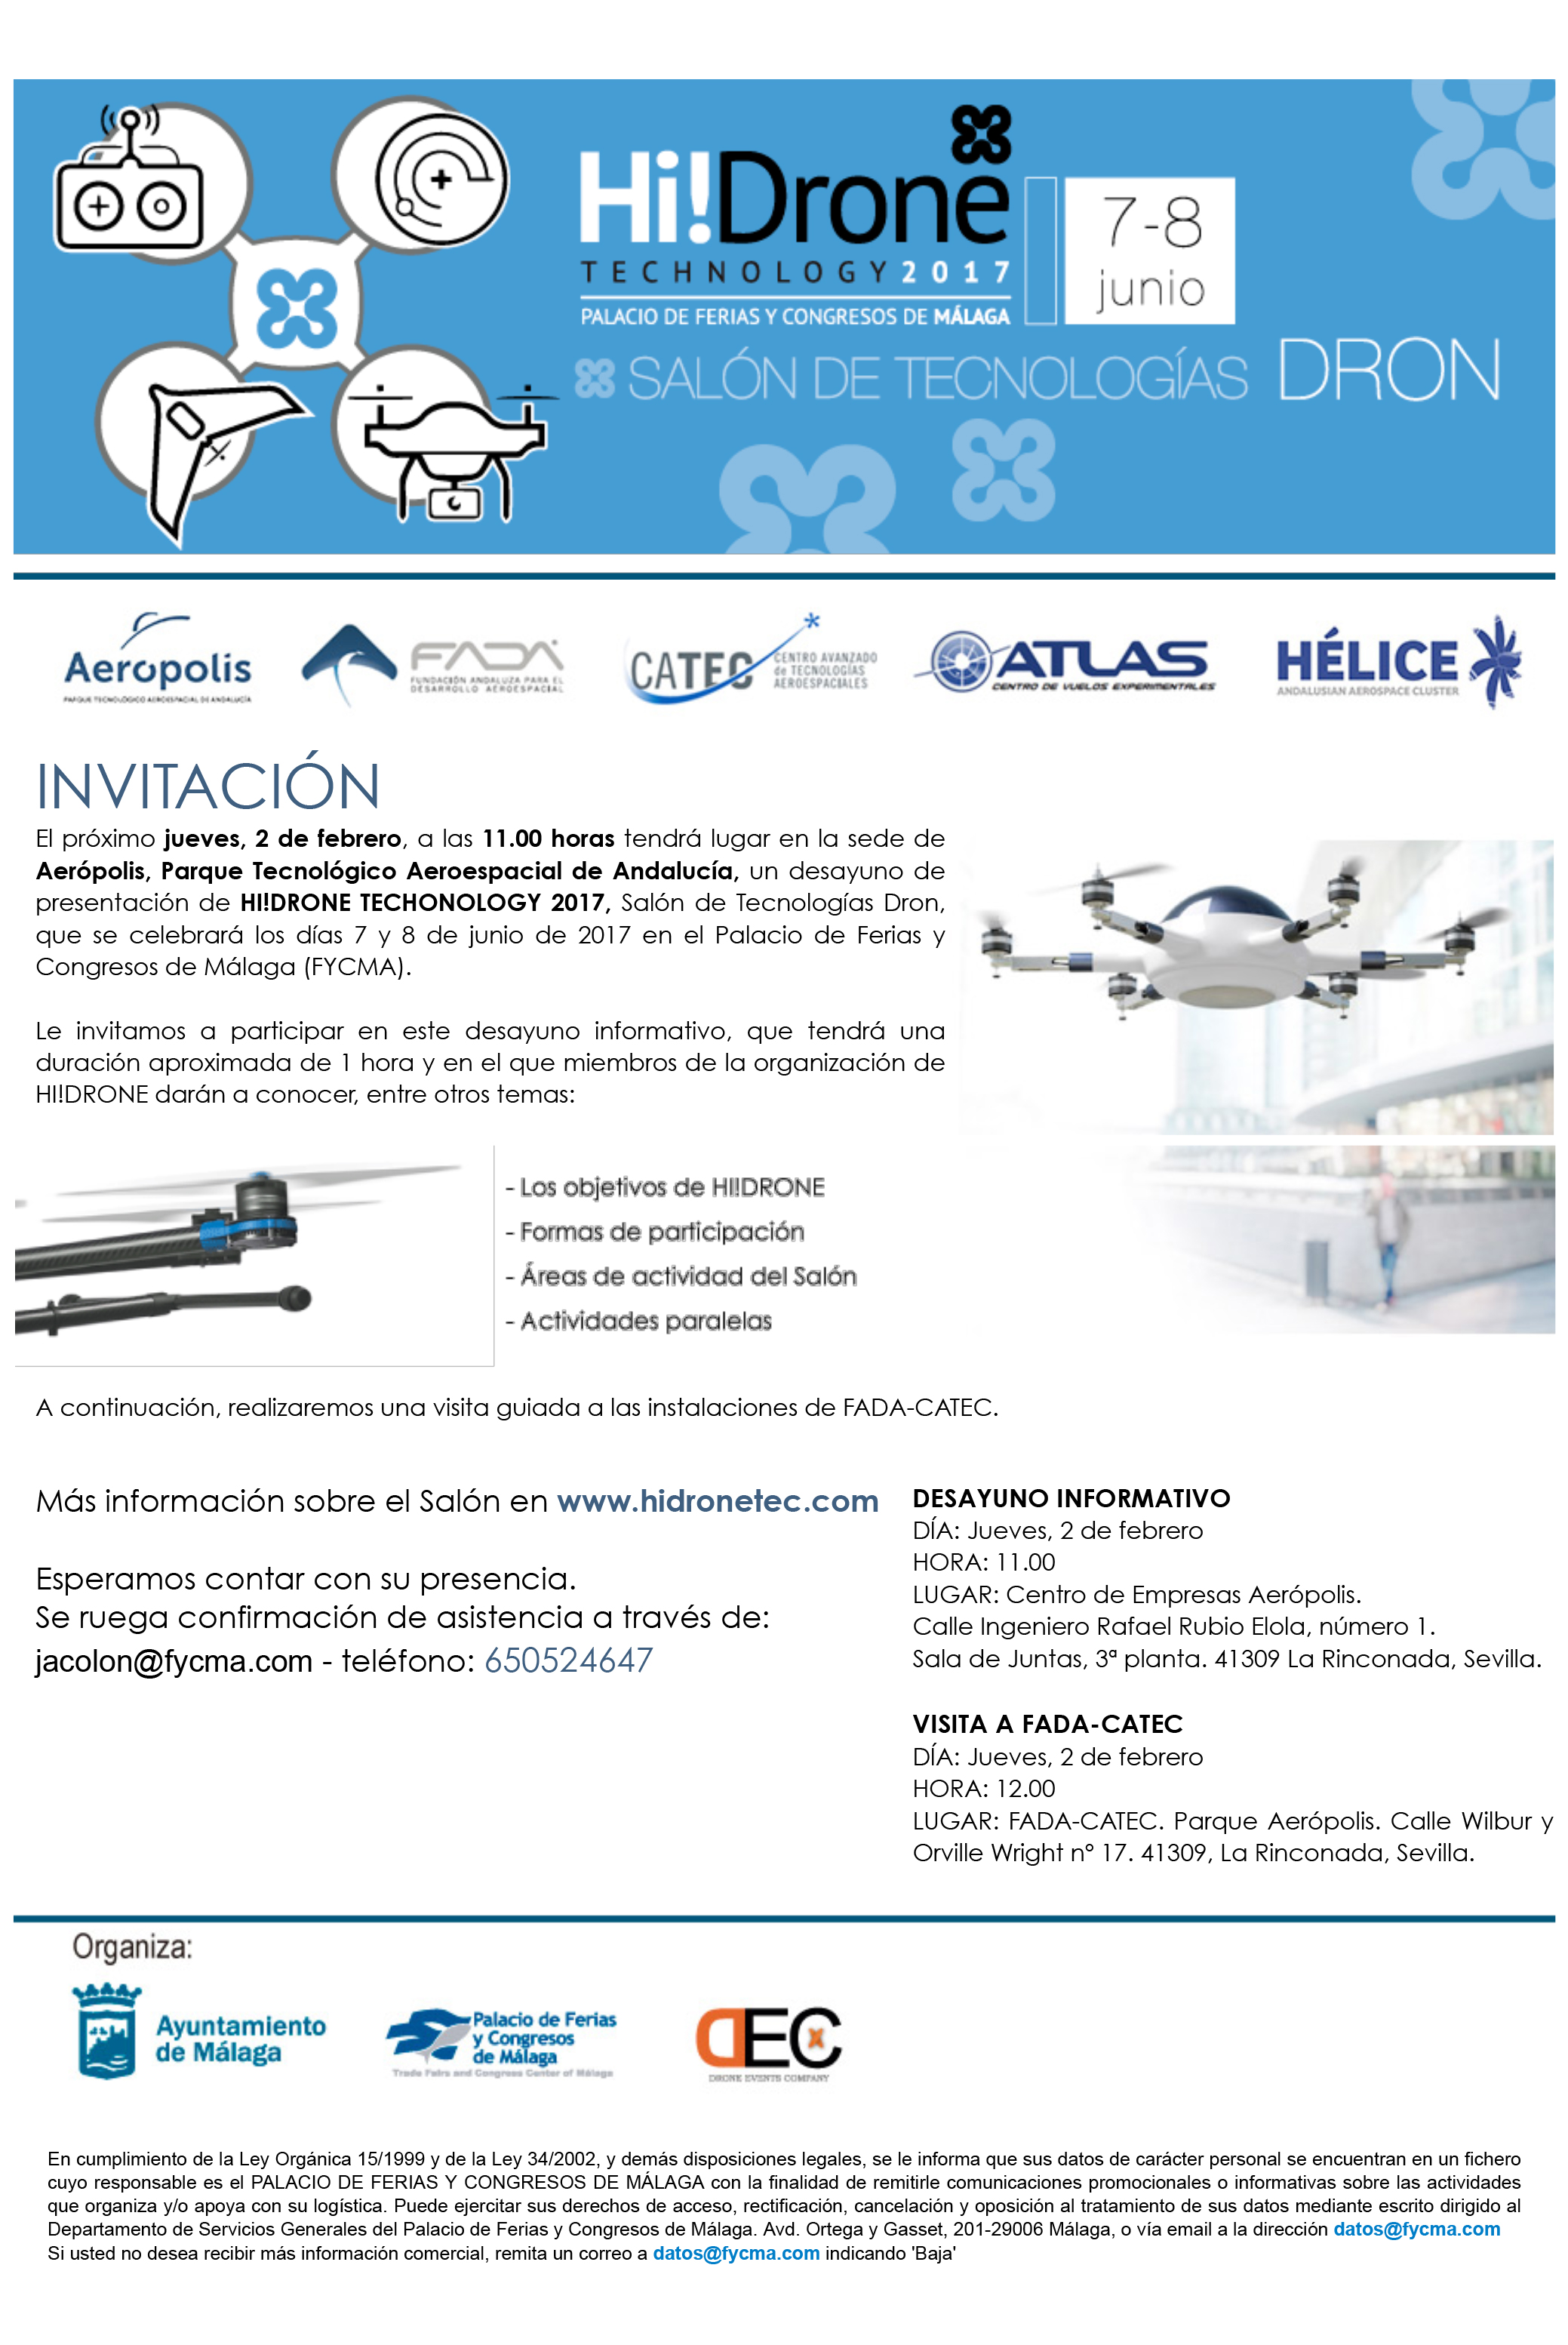 Presentación de Hi! Drone Technology 2017, en Parque Aerópolis el 2 de febrero